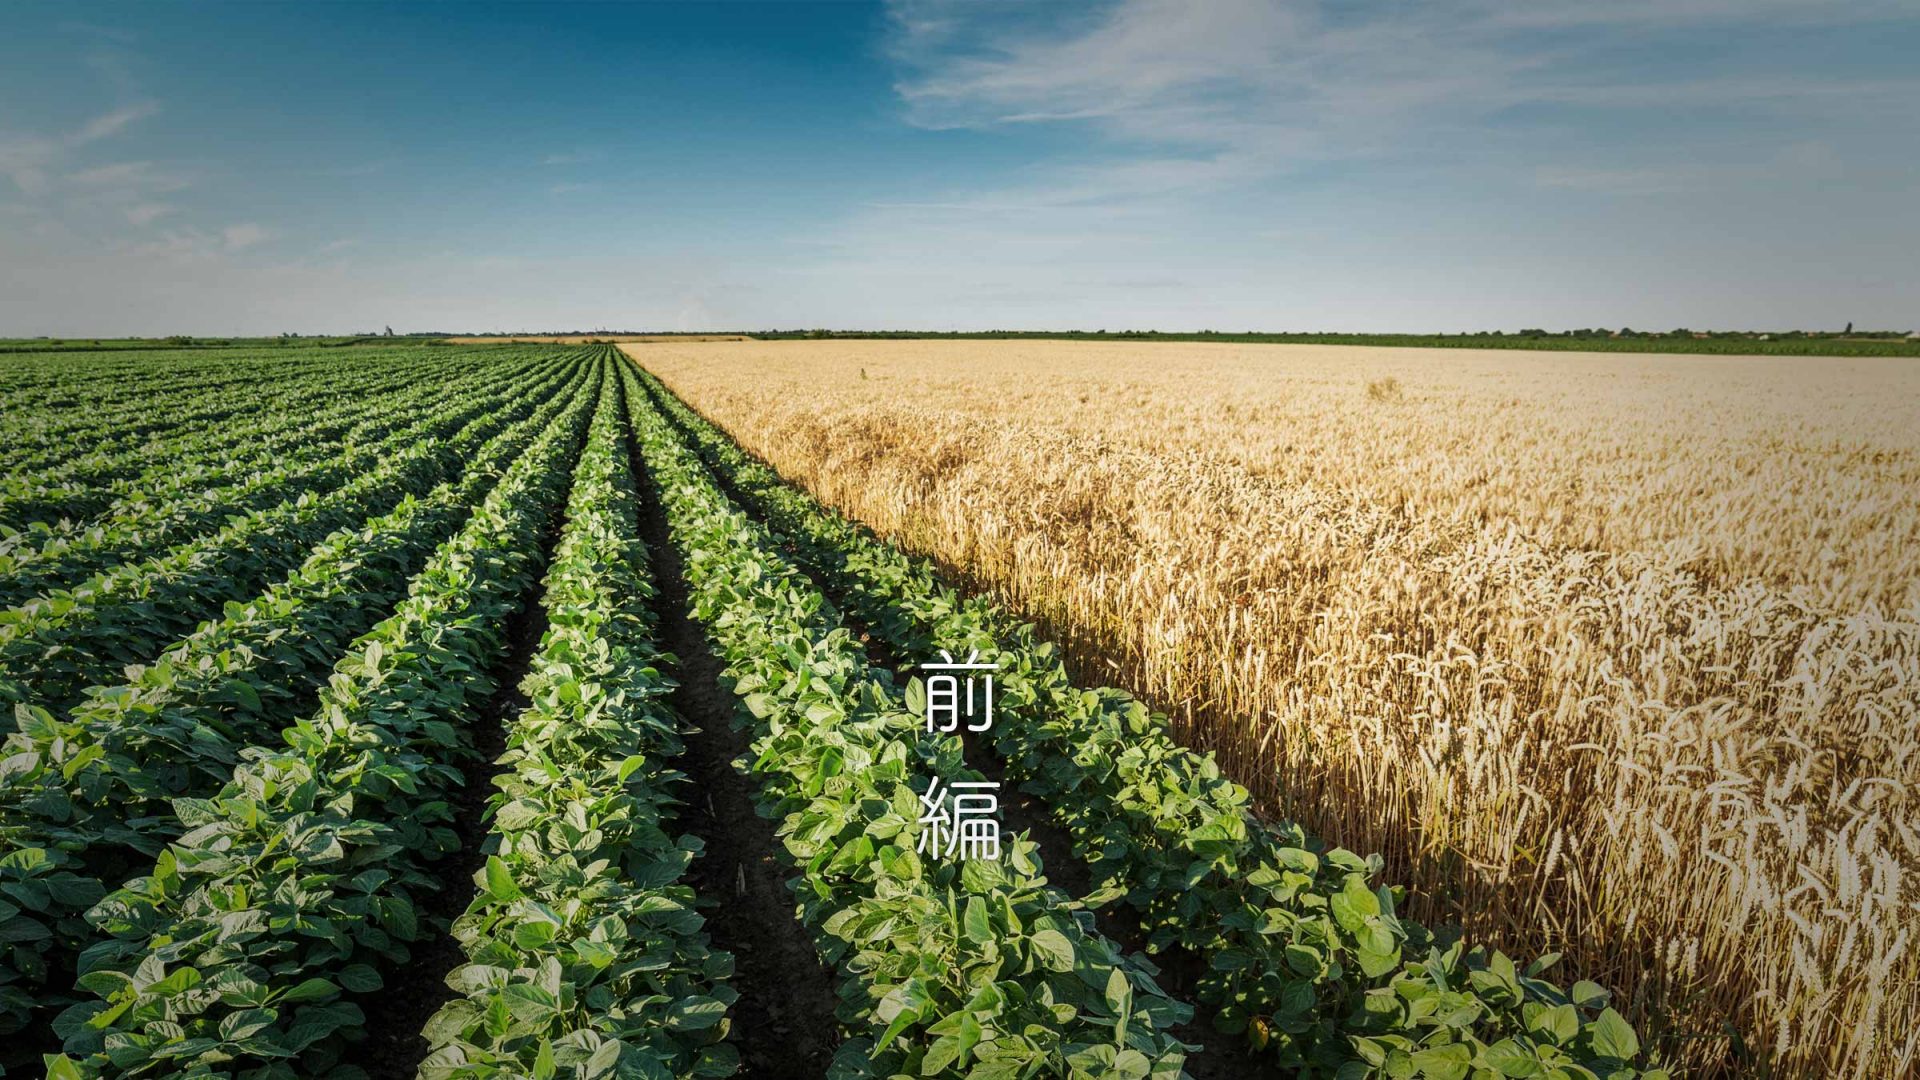 高所得稲作農家の選ぶ第2作目は 麦と大豆を徹底比較 前編 農業利益創造研究所